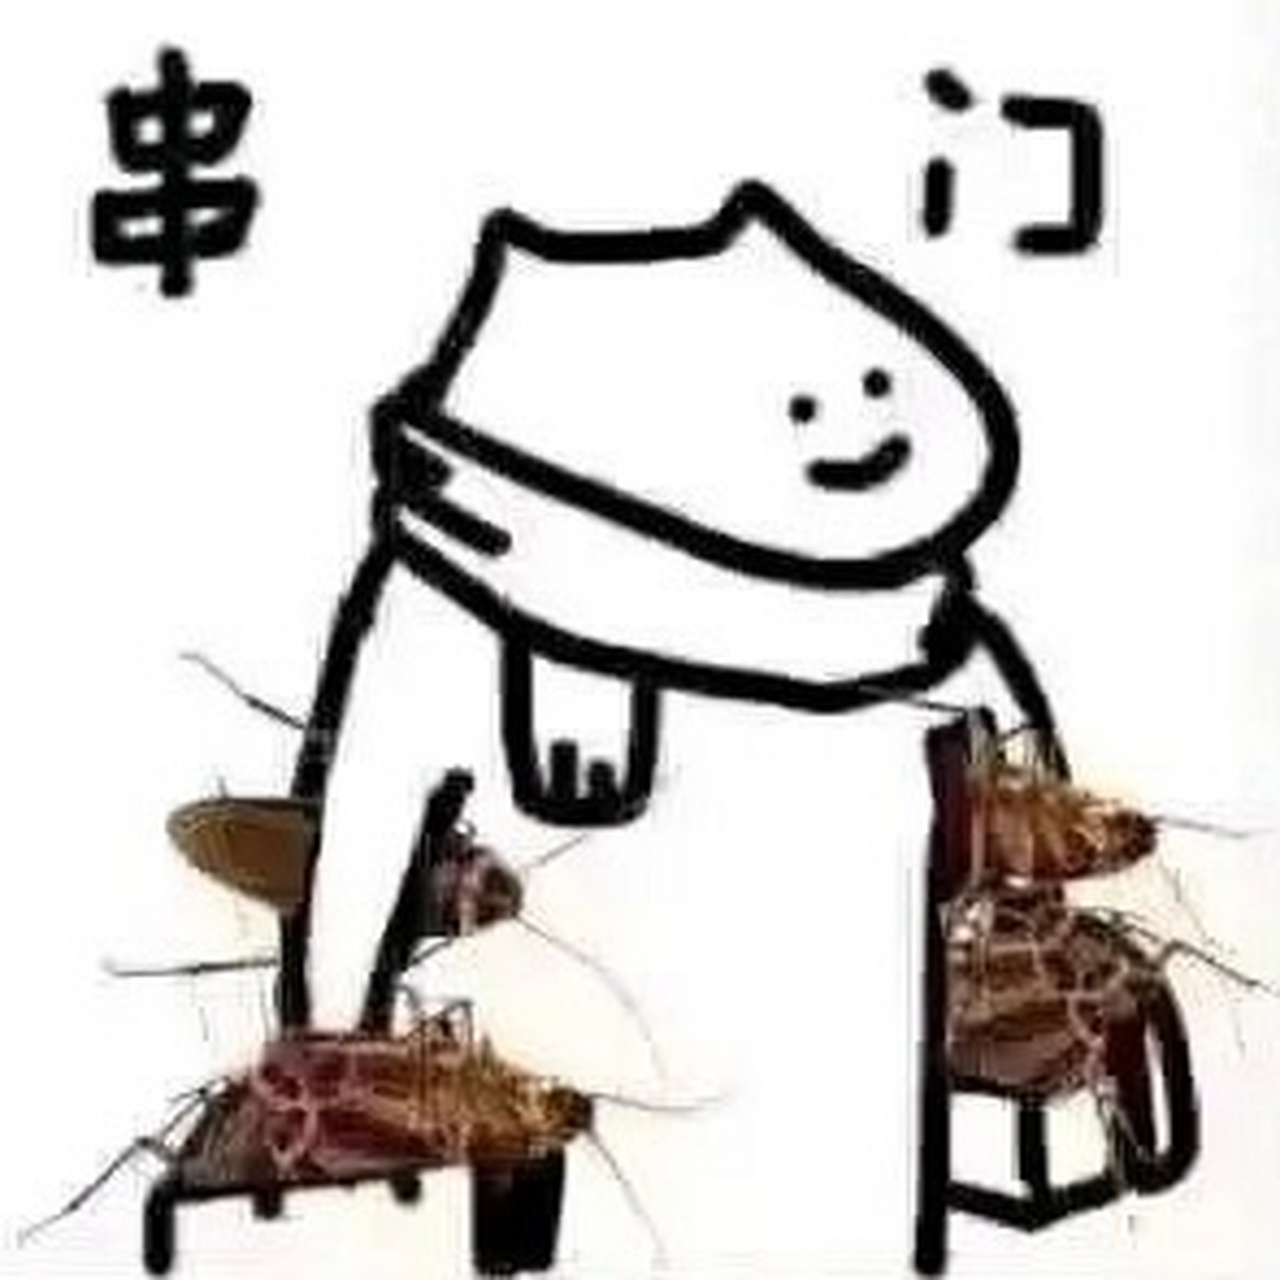 七彩蟑螂表情包图片